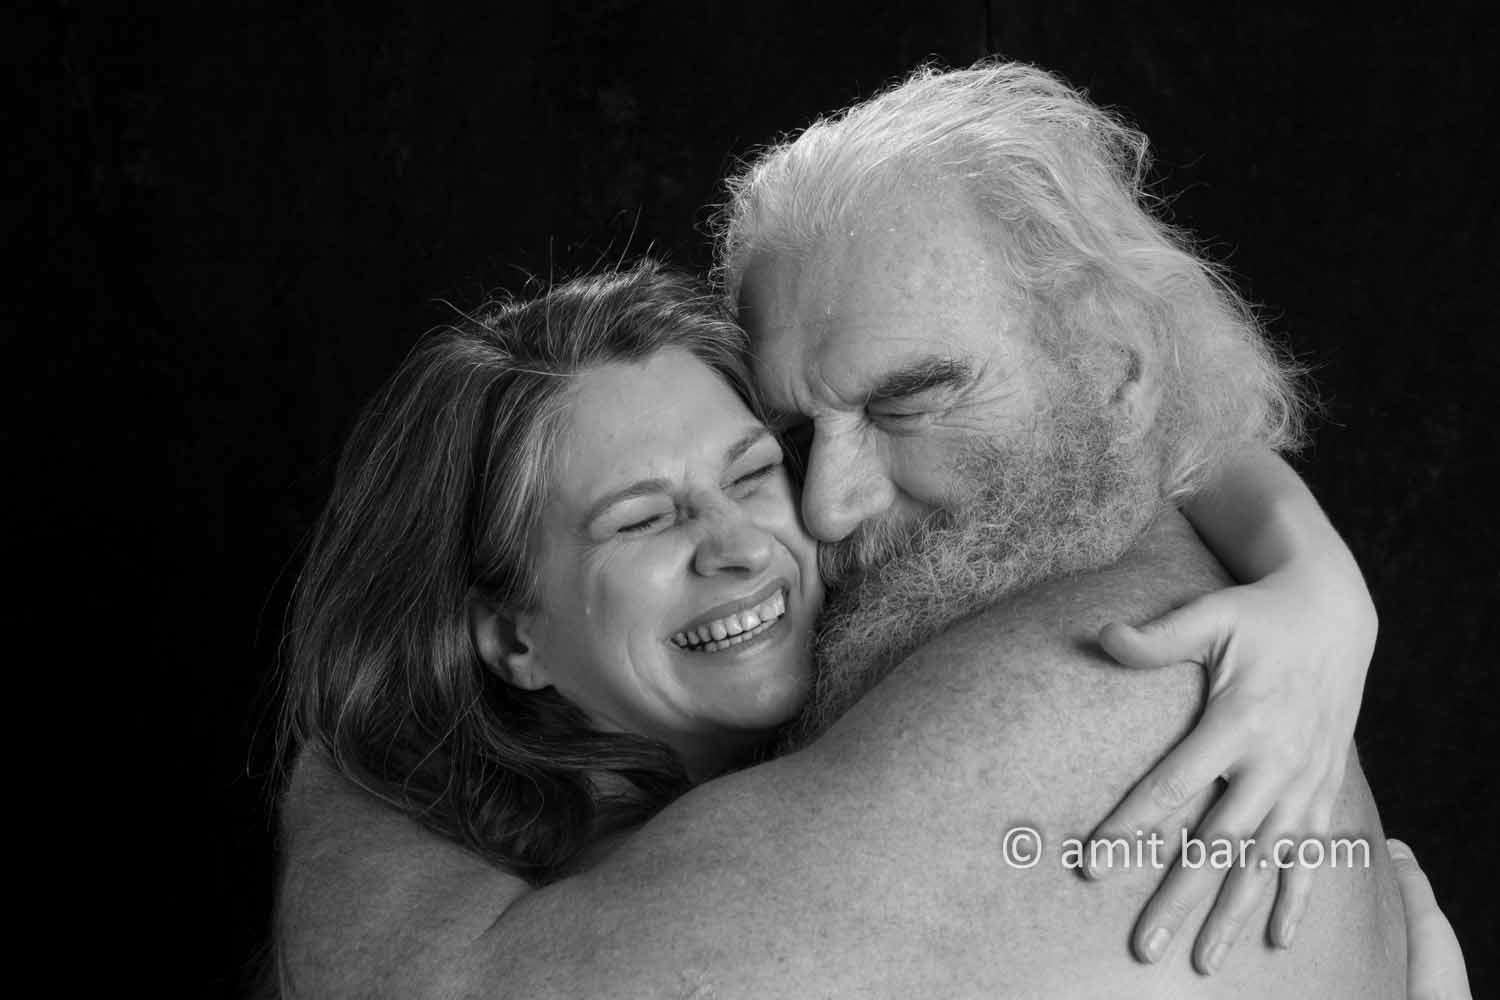 Hug: Old man huges his beloved one